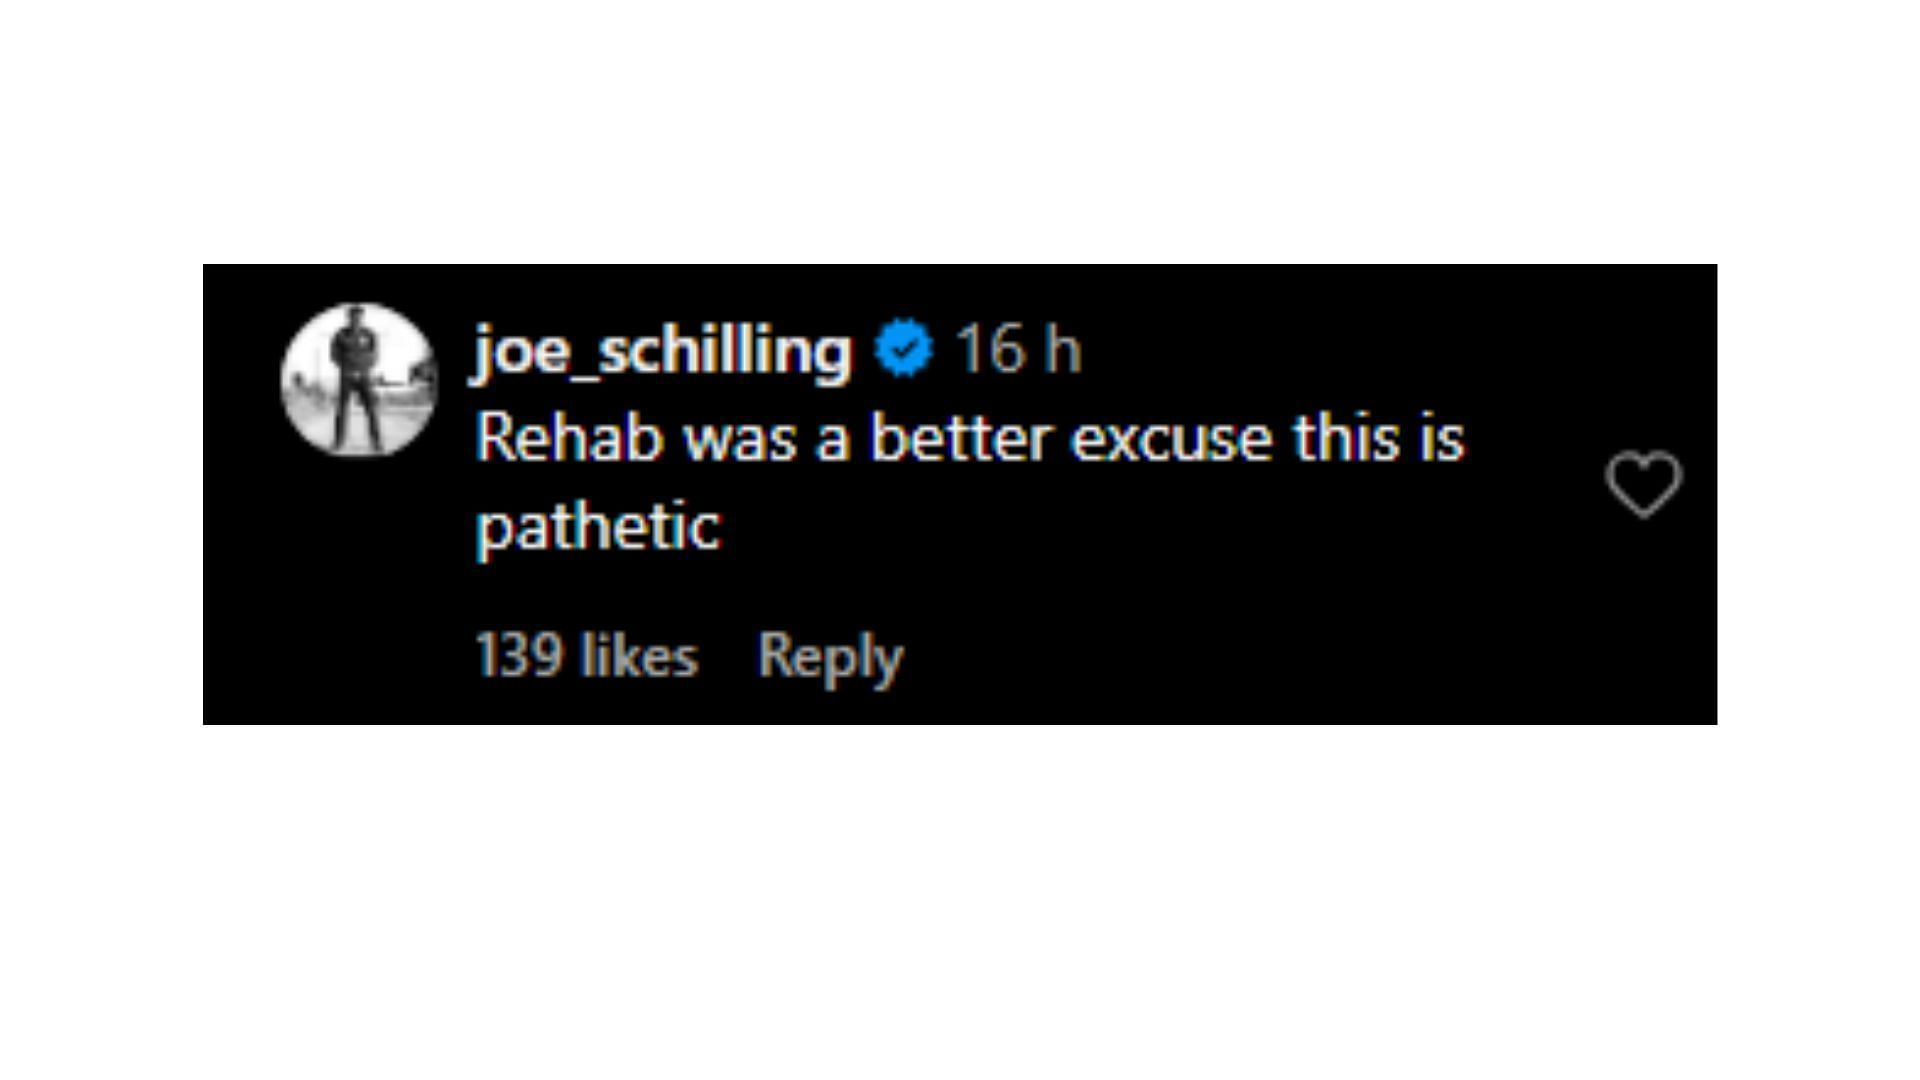 Joe Schilling&#039;s comment